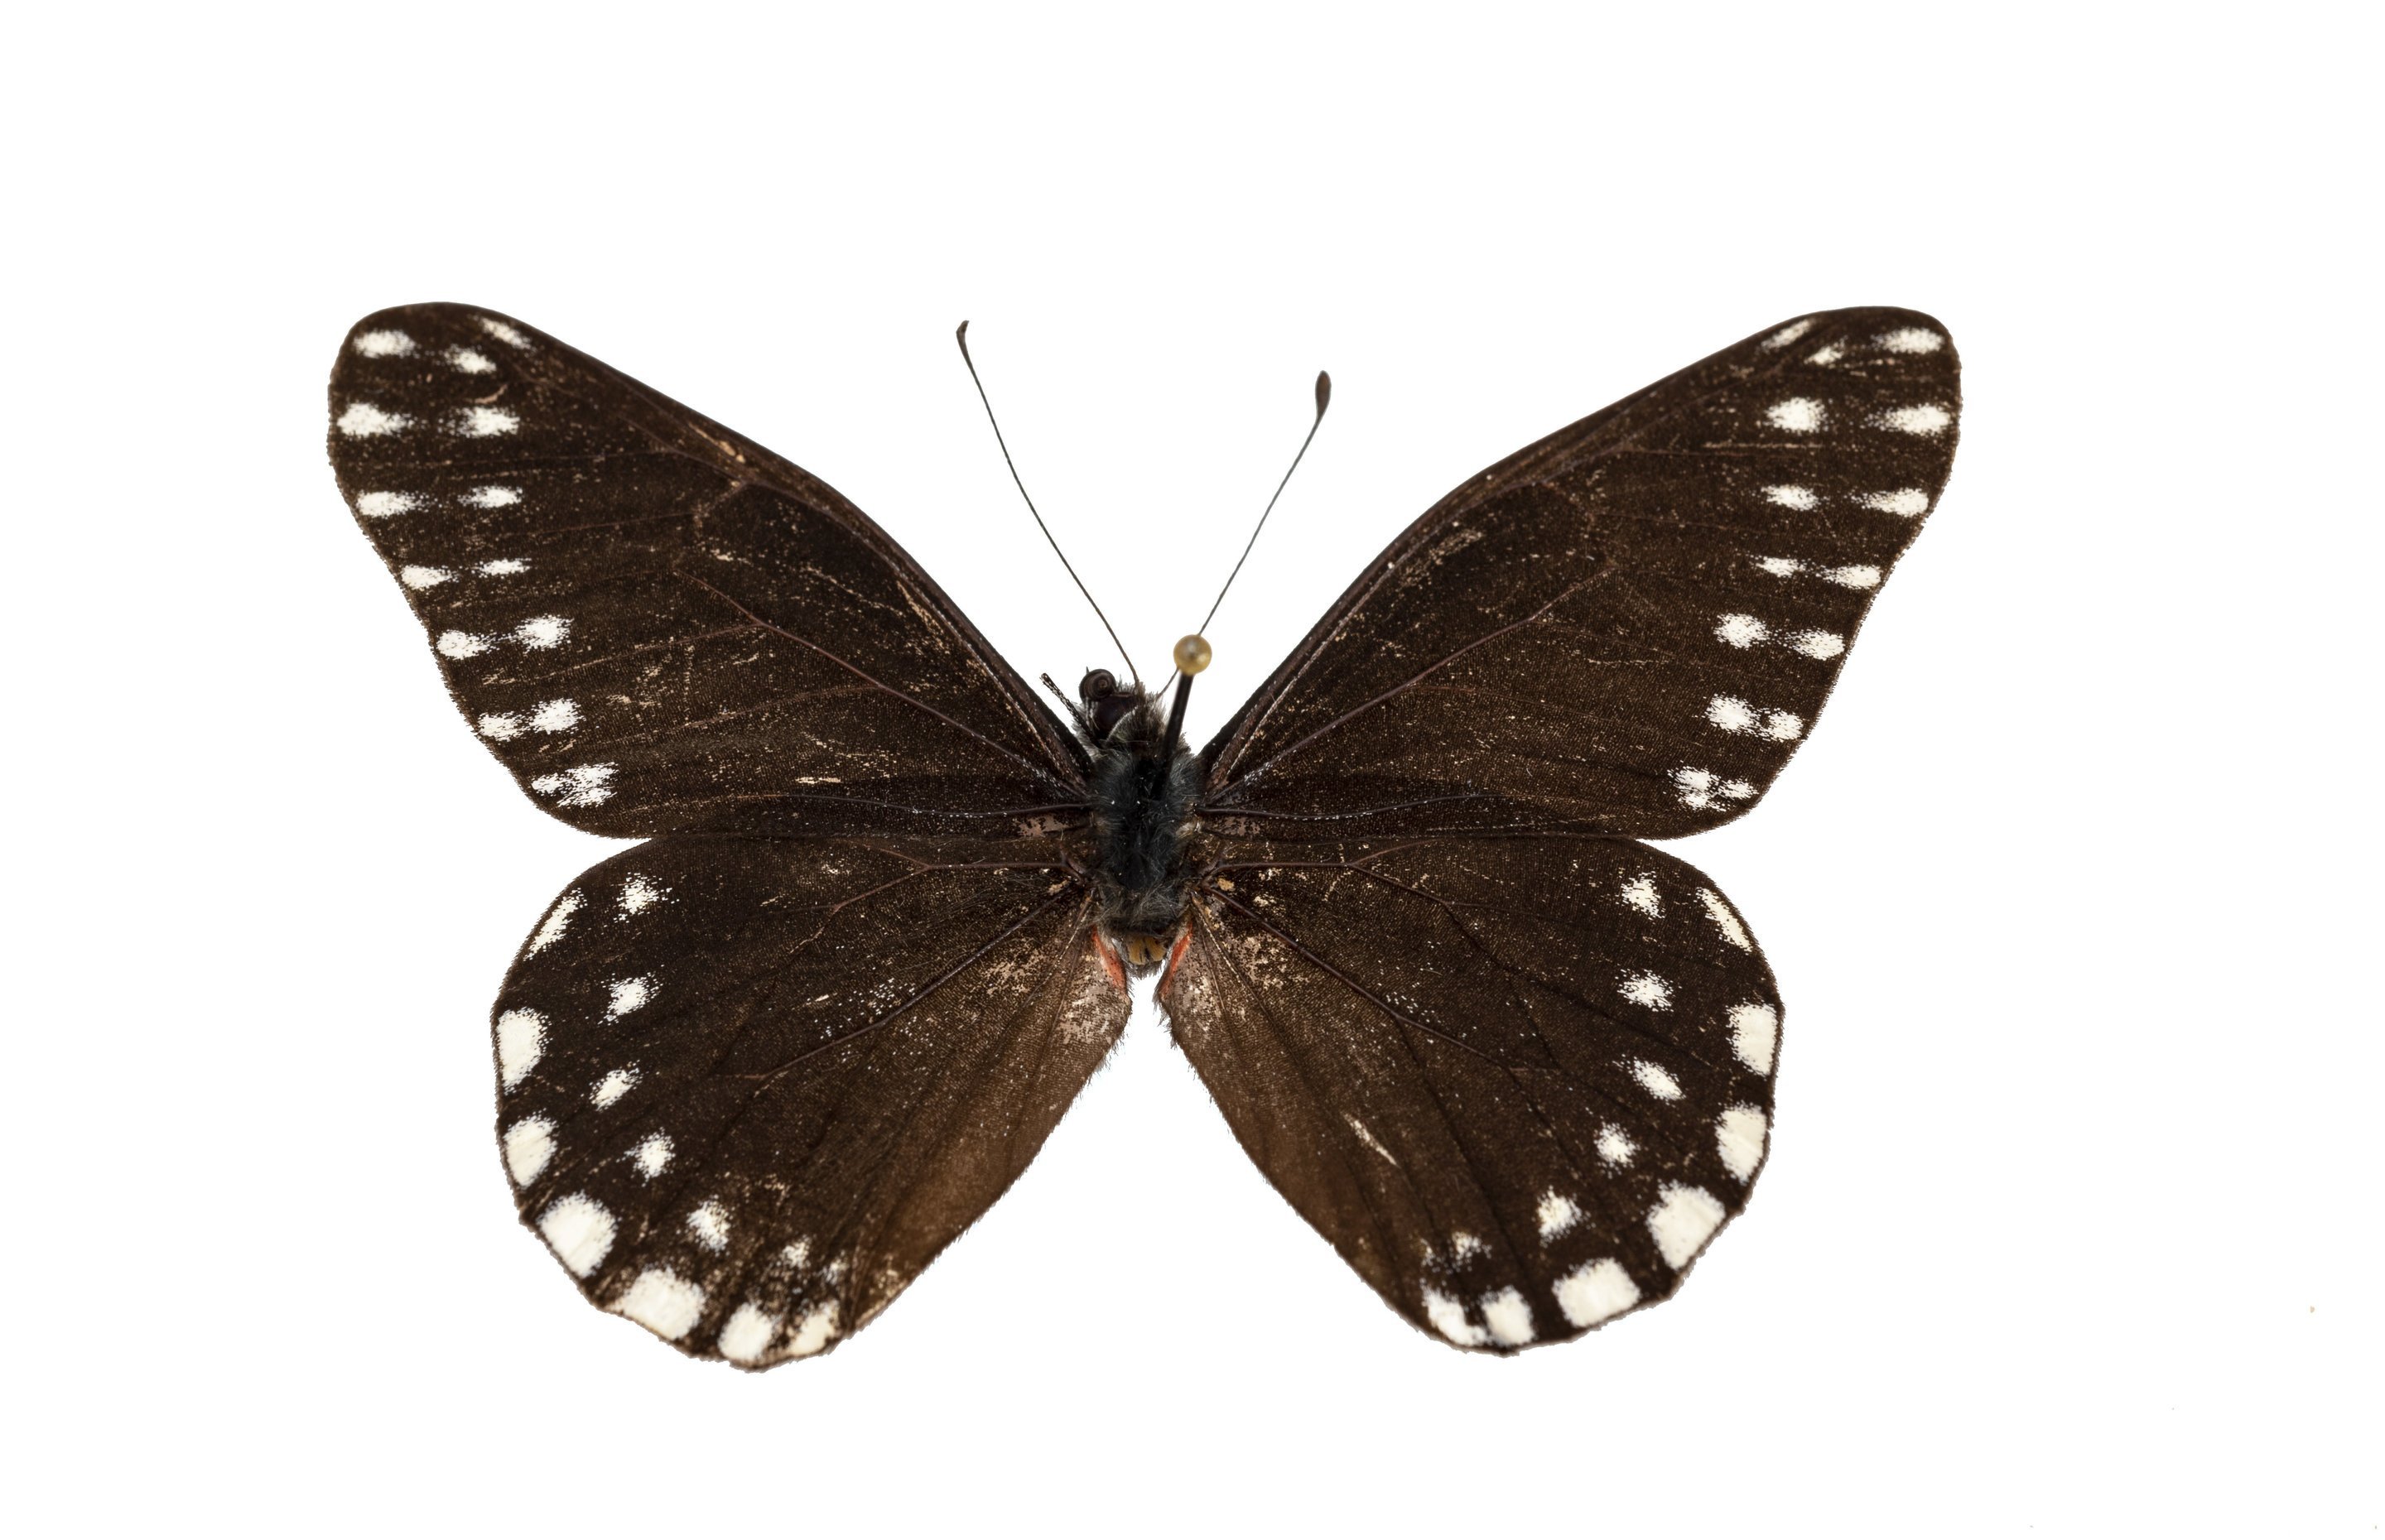 Сохранение темных бабочек в результате. Бабочка черная. Бабочка черная с белыми пятнами. Бабочка черная с белыми пятнышками. Белая бабочка в черную крапинку.